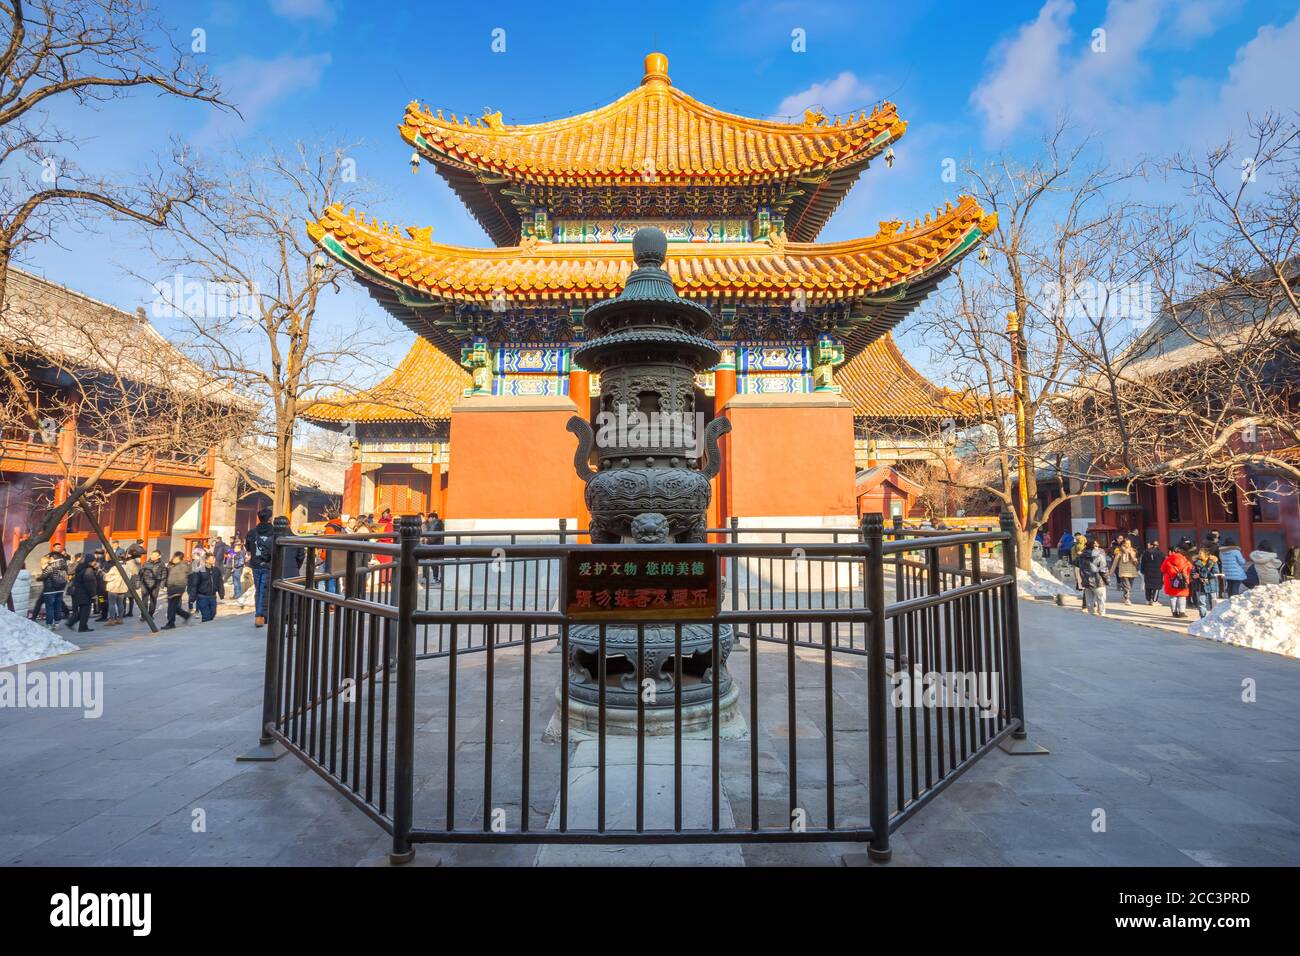 Beijing, Chine - Jan 12 2020: Temple Yonghe - le Palais de la paix et de l'harmonie est un temple lama de l'école Gelug du bouddhisme tibétain, fondée en 16 Banque D'Images